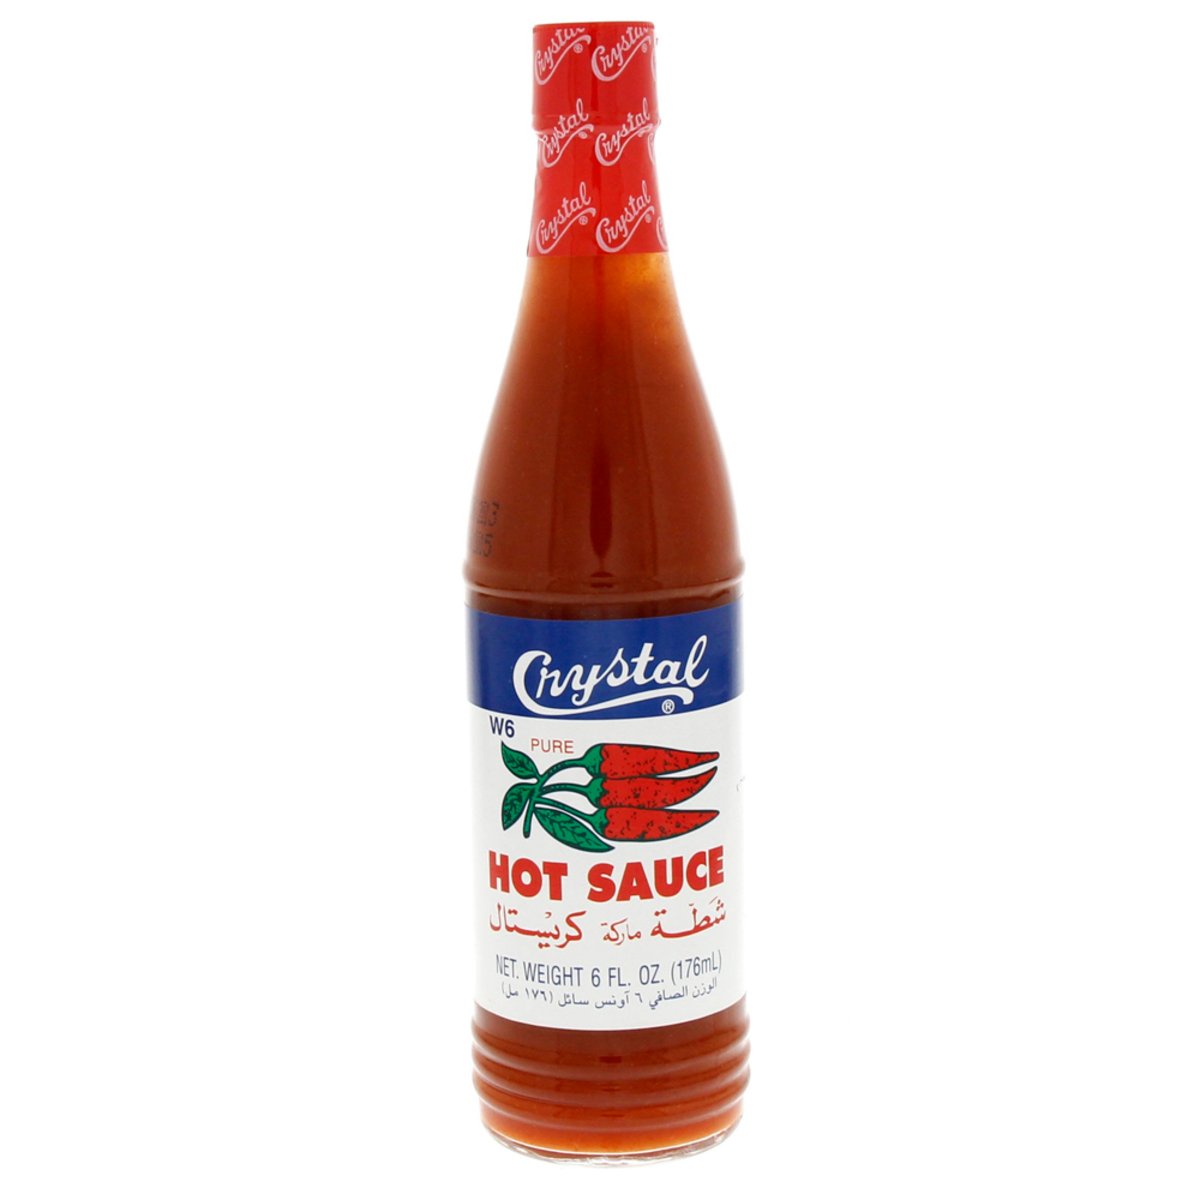 Buy Crystal Pure Hot Sauce 6 Fl.Oz (176 ml) Online at Best Price | Sauces | Lulu KSA in UAE